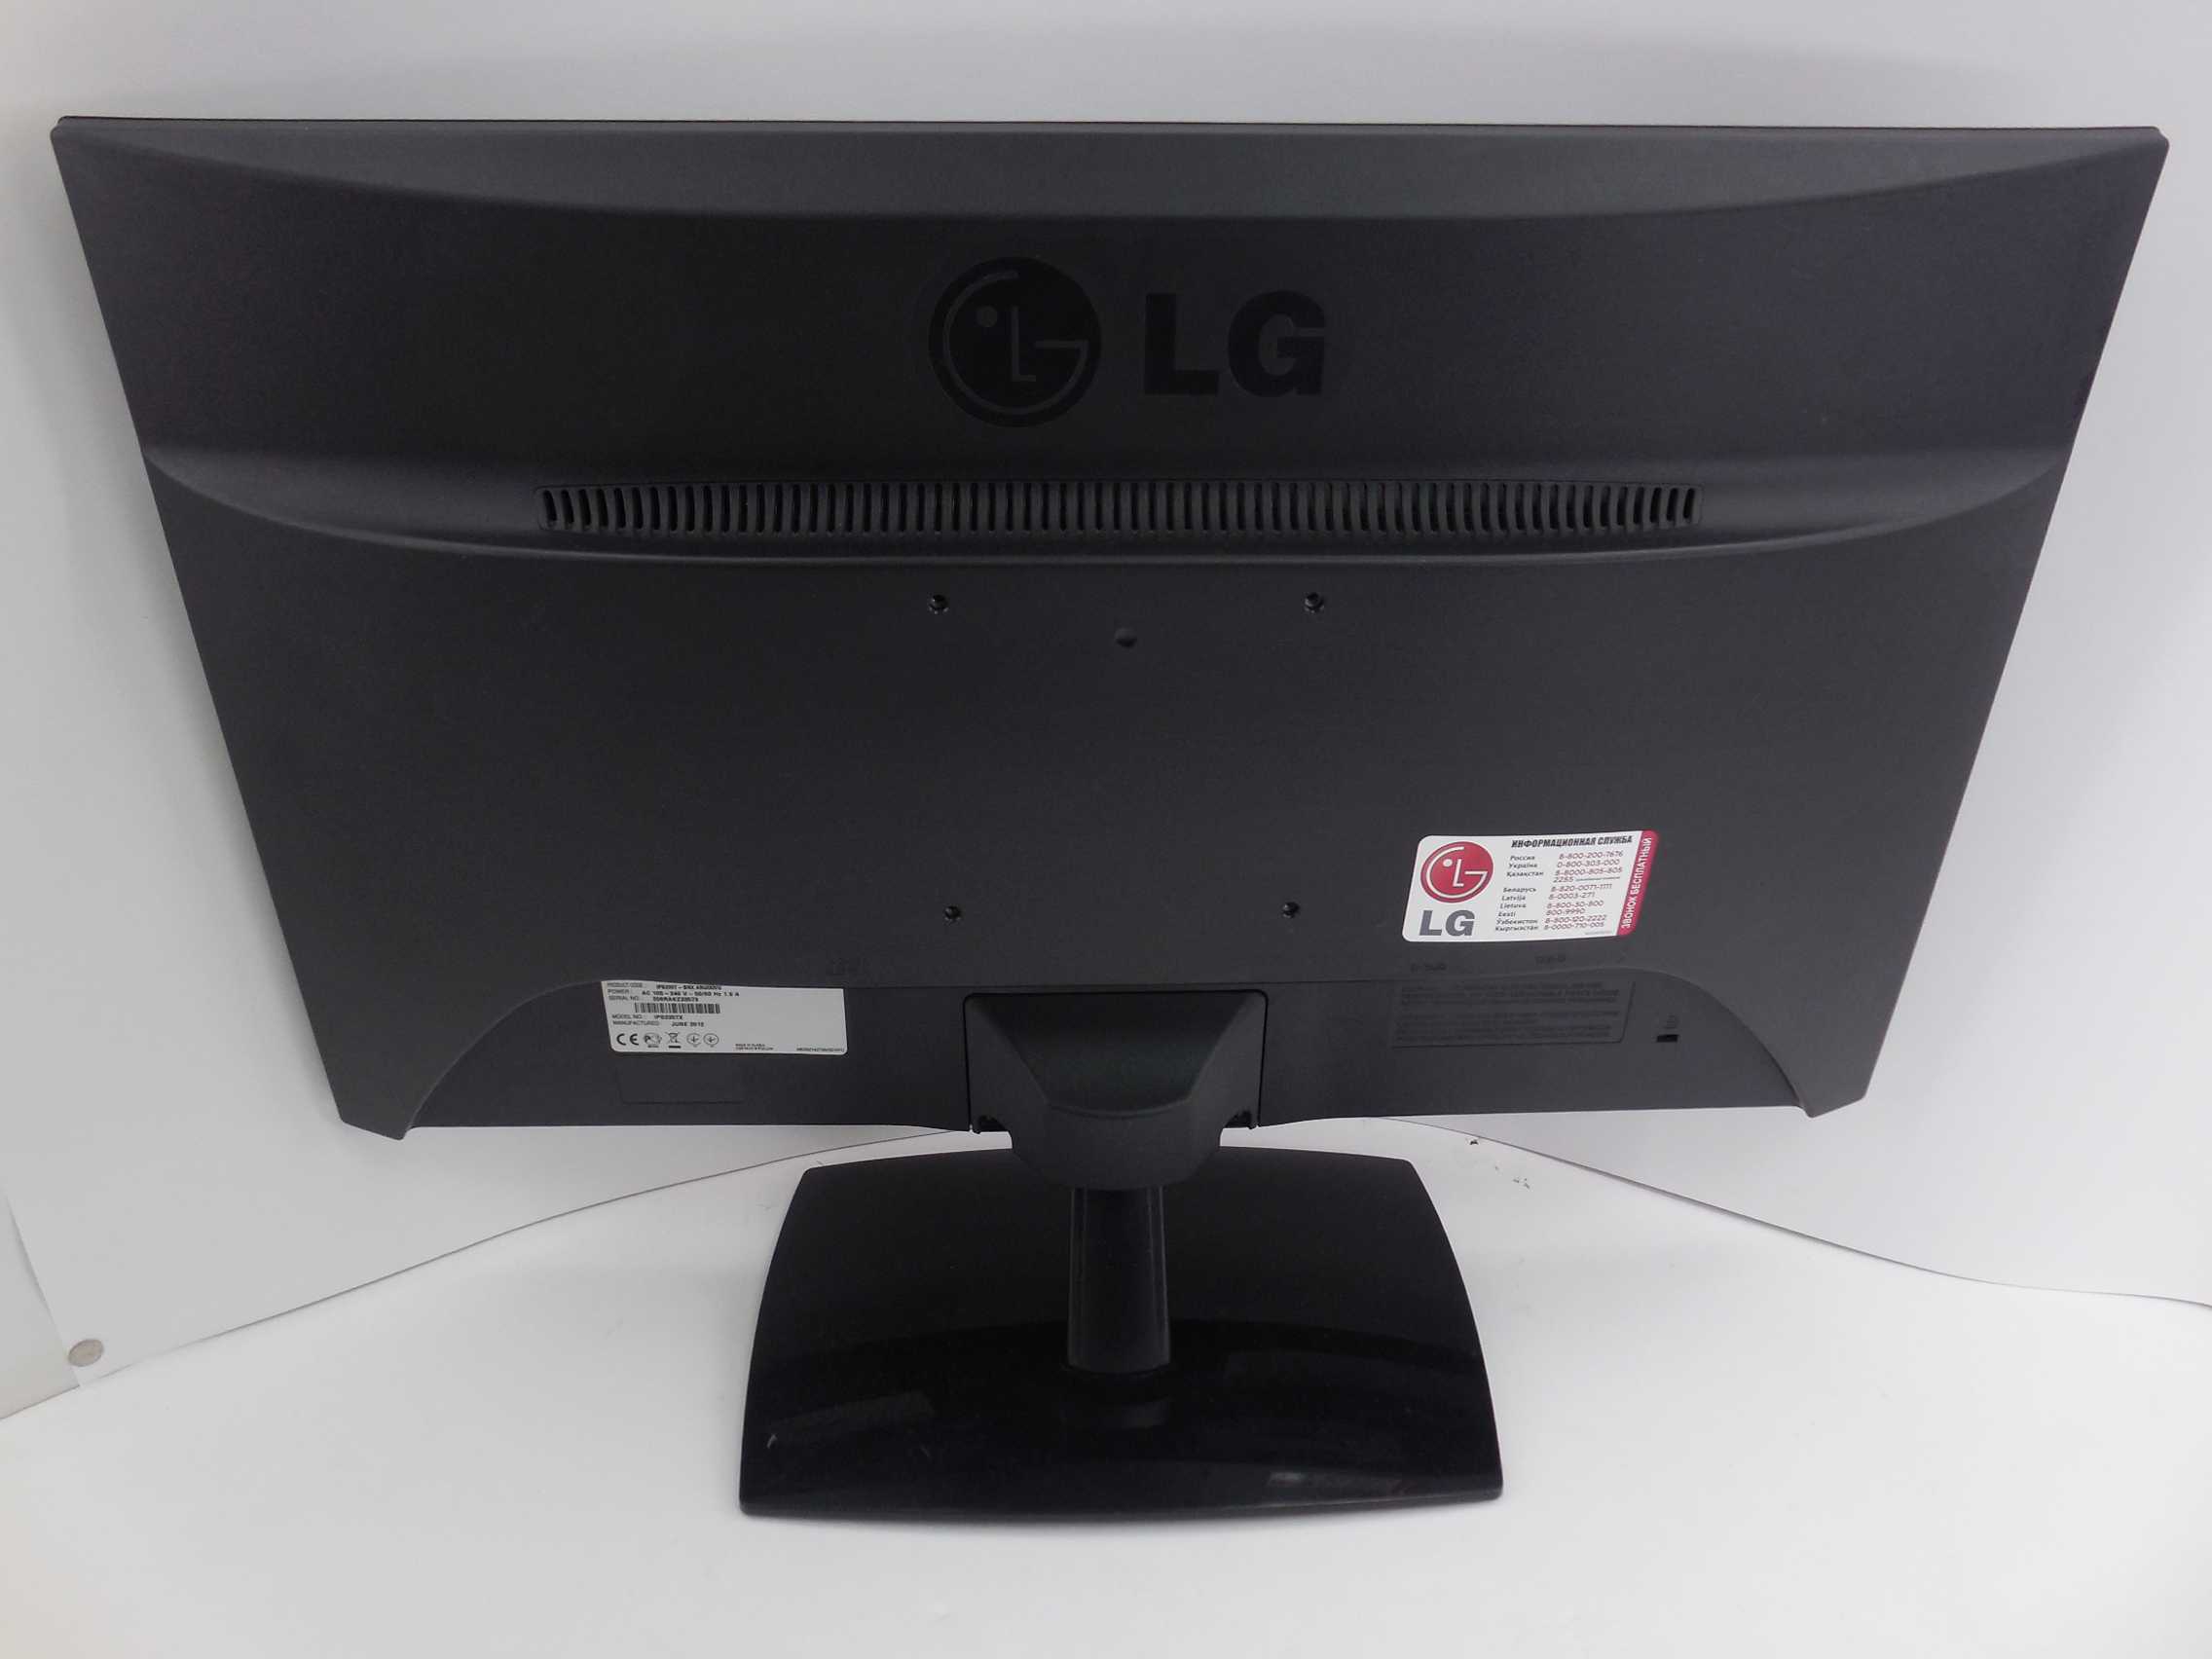 Lg ips235t - купить , скидки, цена, отзывы, обзор, характеристики - мониторы